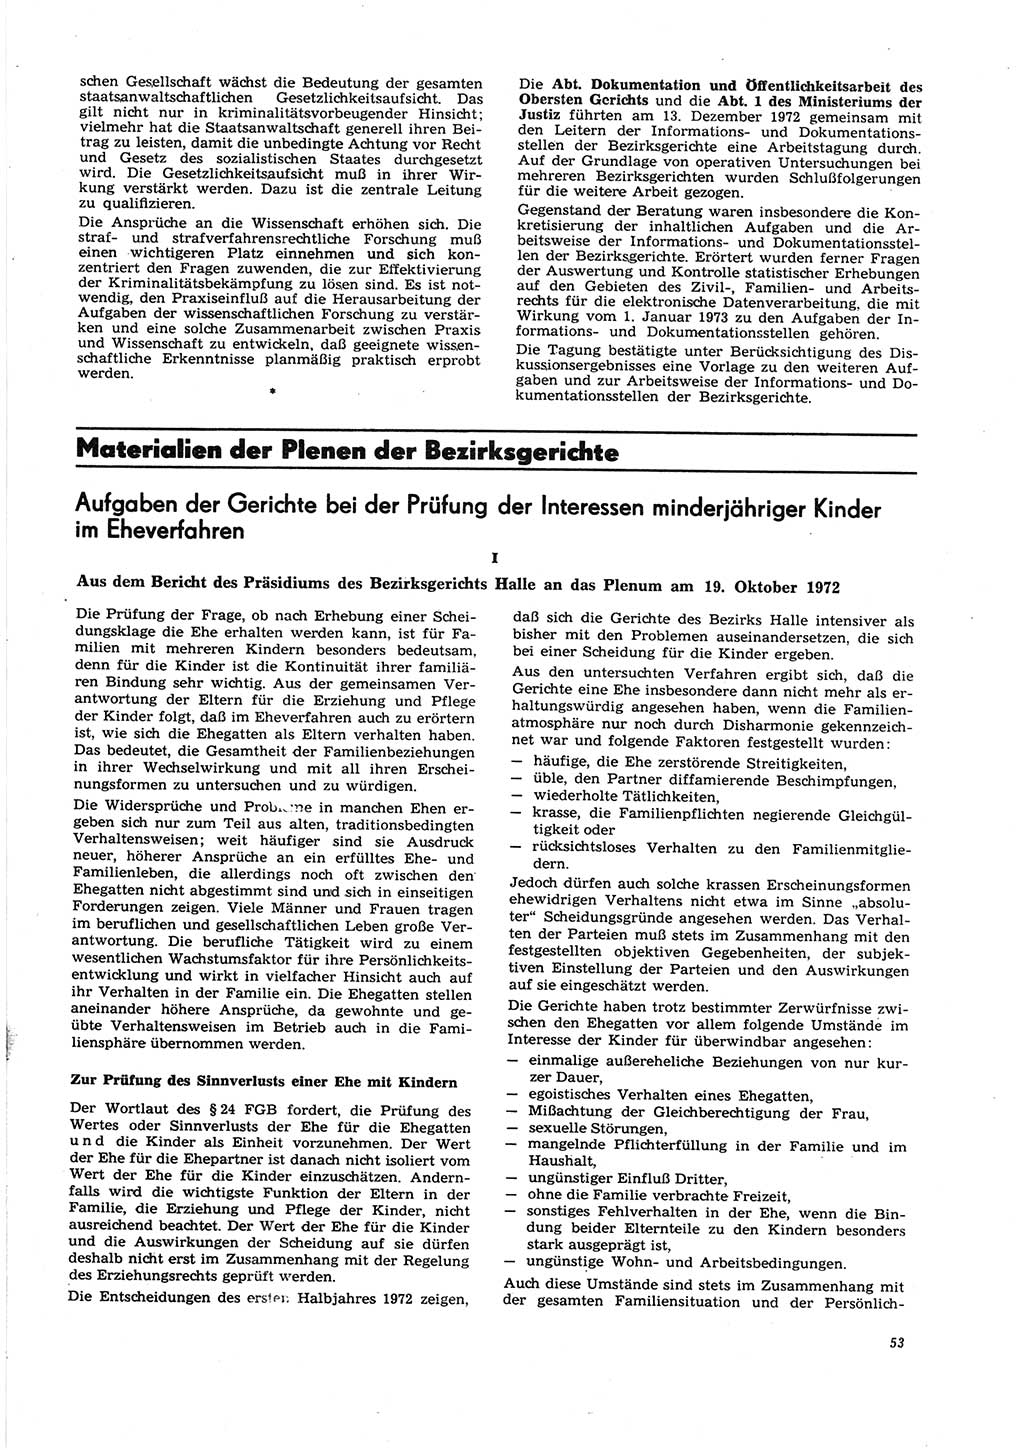 Neue Justiz (NJ), Zeitschrift für Recht und Rechtswissenschaft [Deutsche Demokratische Republik (DDR)], 27. Jahrgang 1973, Seite 53 (NJ DDR 1973, S. 53)